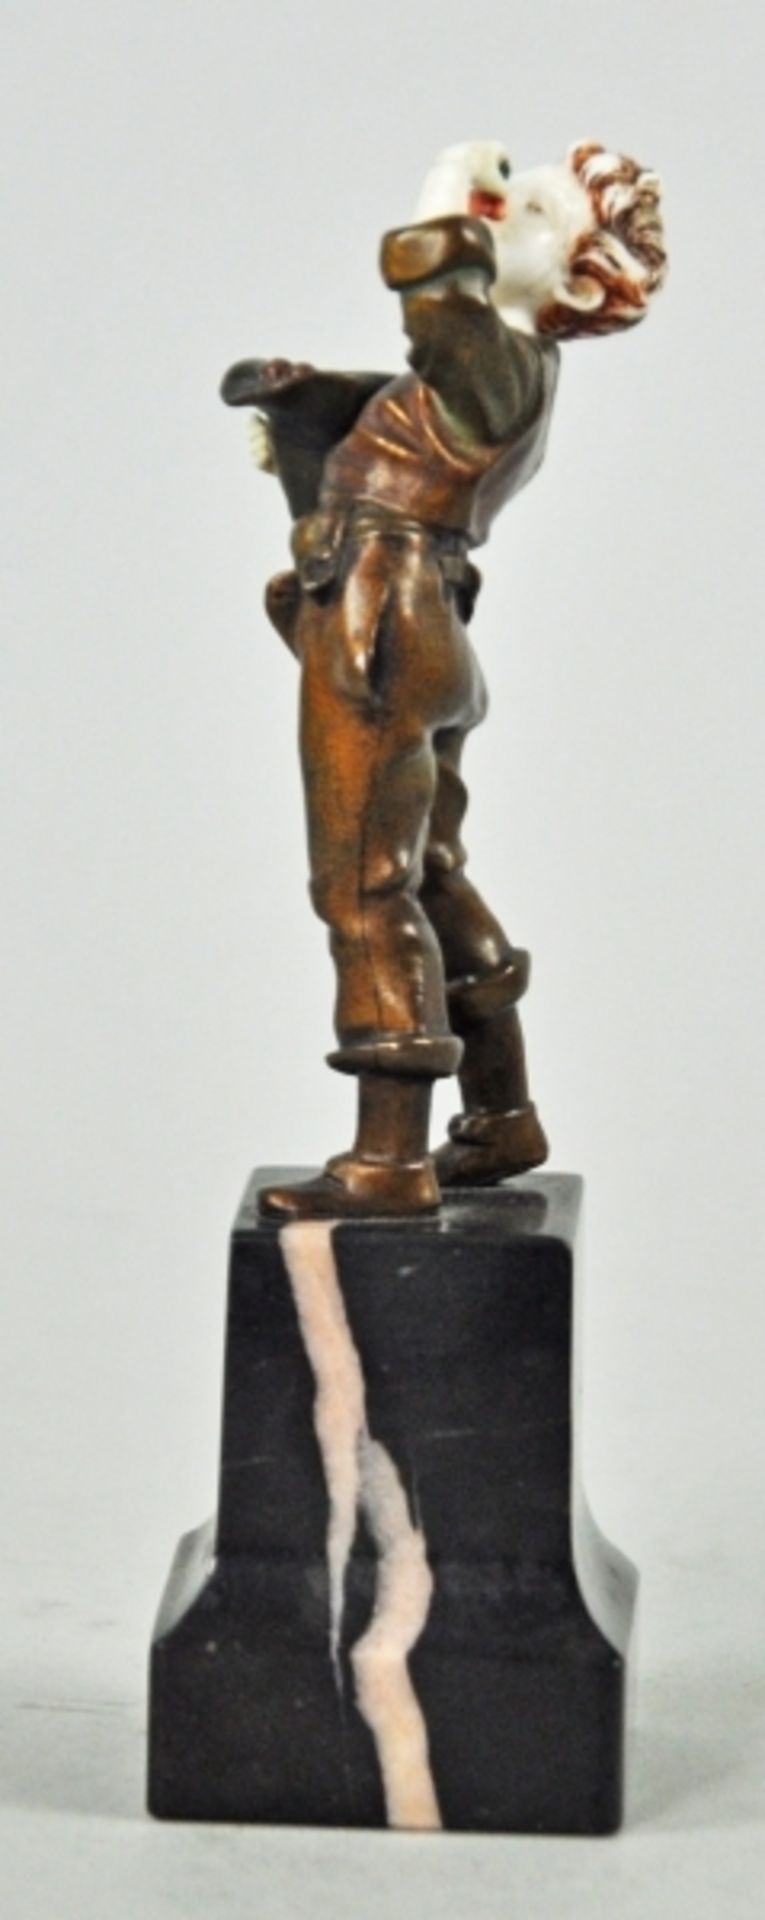 KIRSCHENESSER kleiner Junge beim Kirschen essen, chryselephantine Figur, vergoldete Bronze/Bein, auf - Image 5 of 5